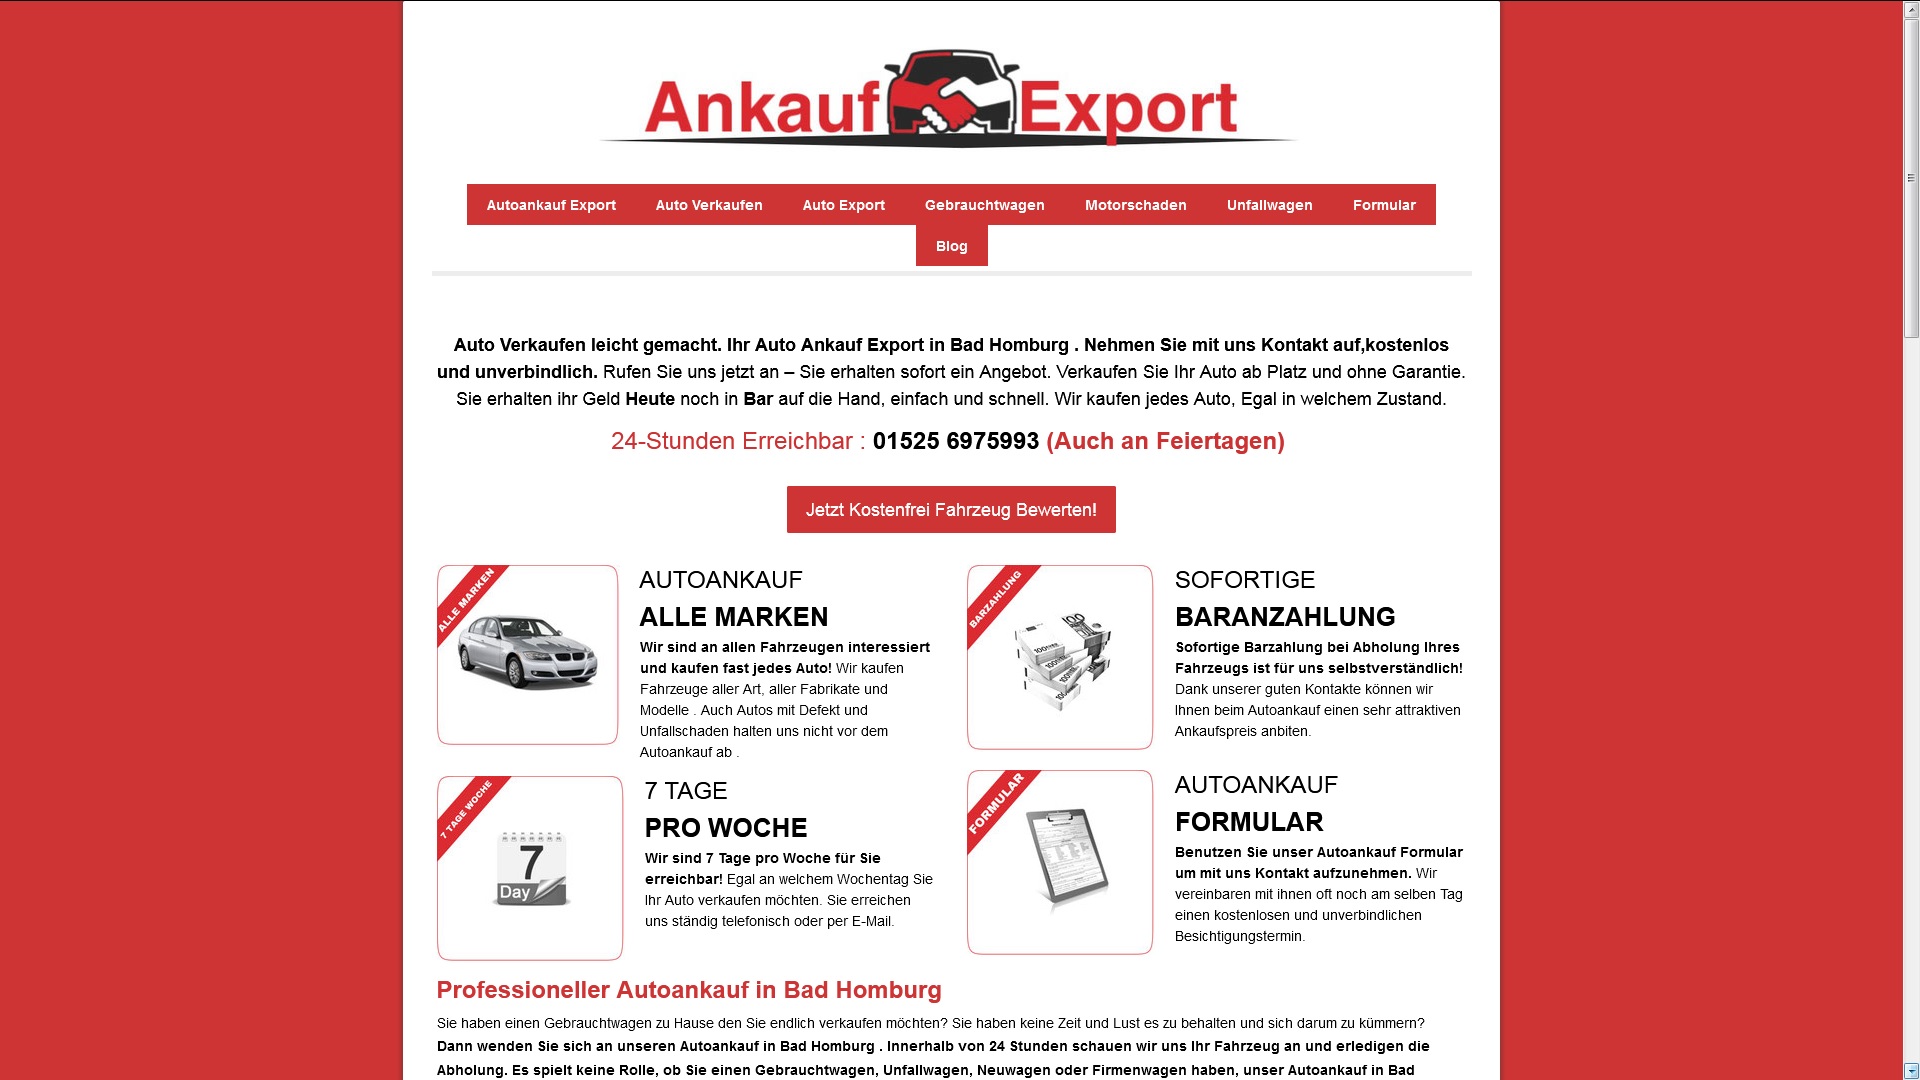 autoankauf dortmund fahrzeugverkauf alles aus einer hand - Autoankauf Dortmund – Fahrzeugverkauf alles aus einer Hand